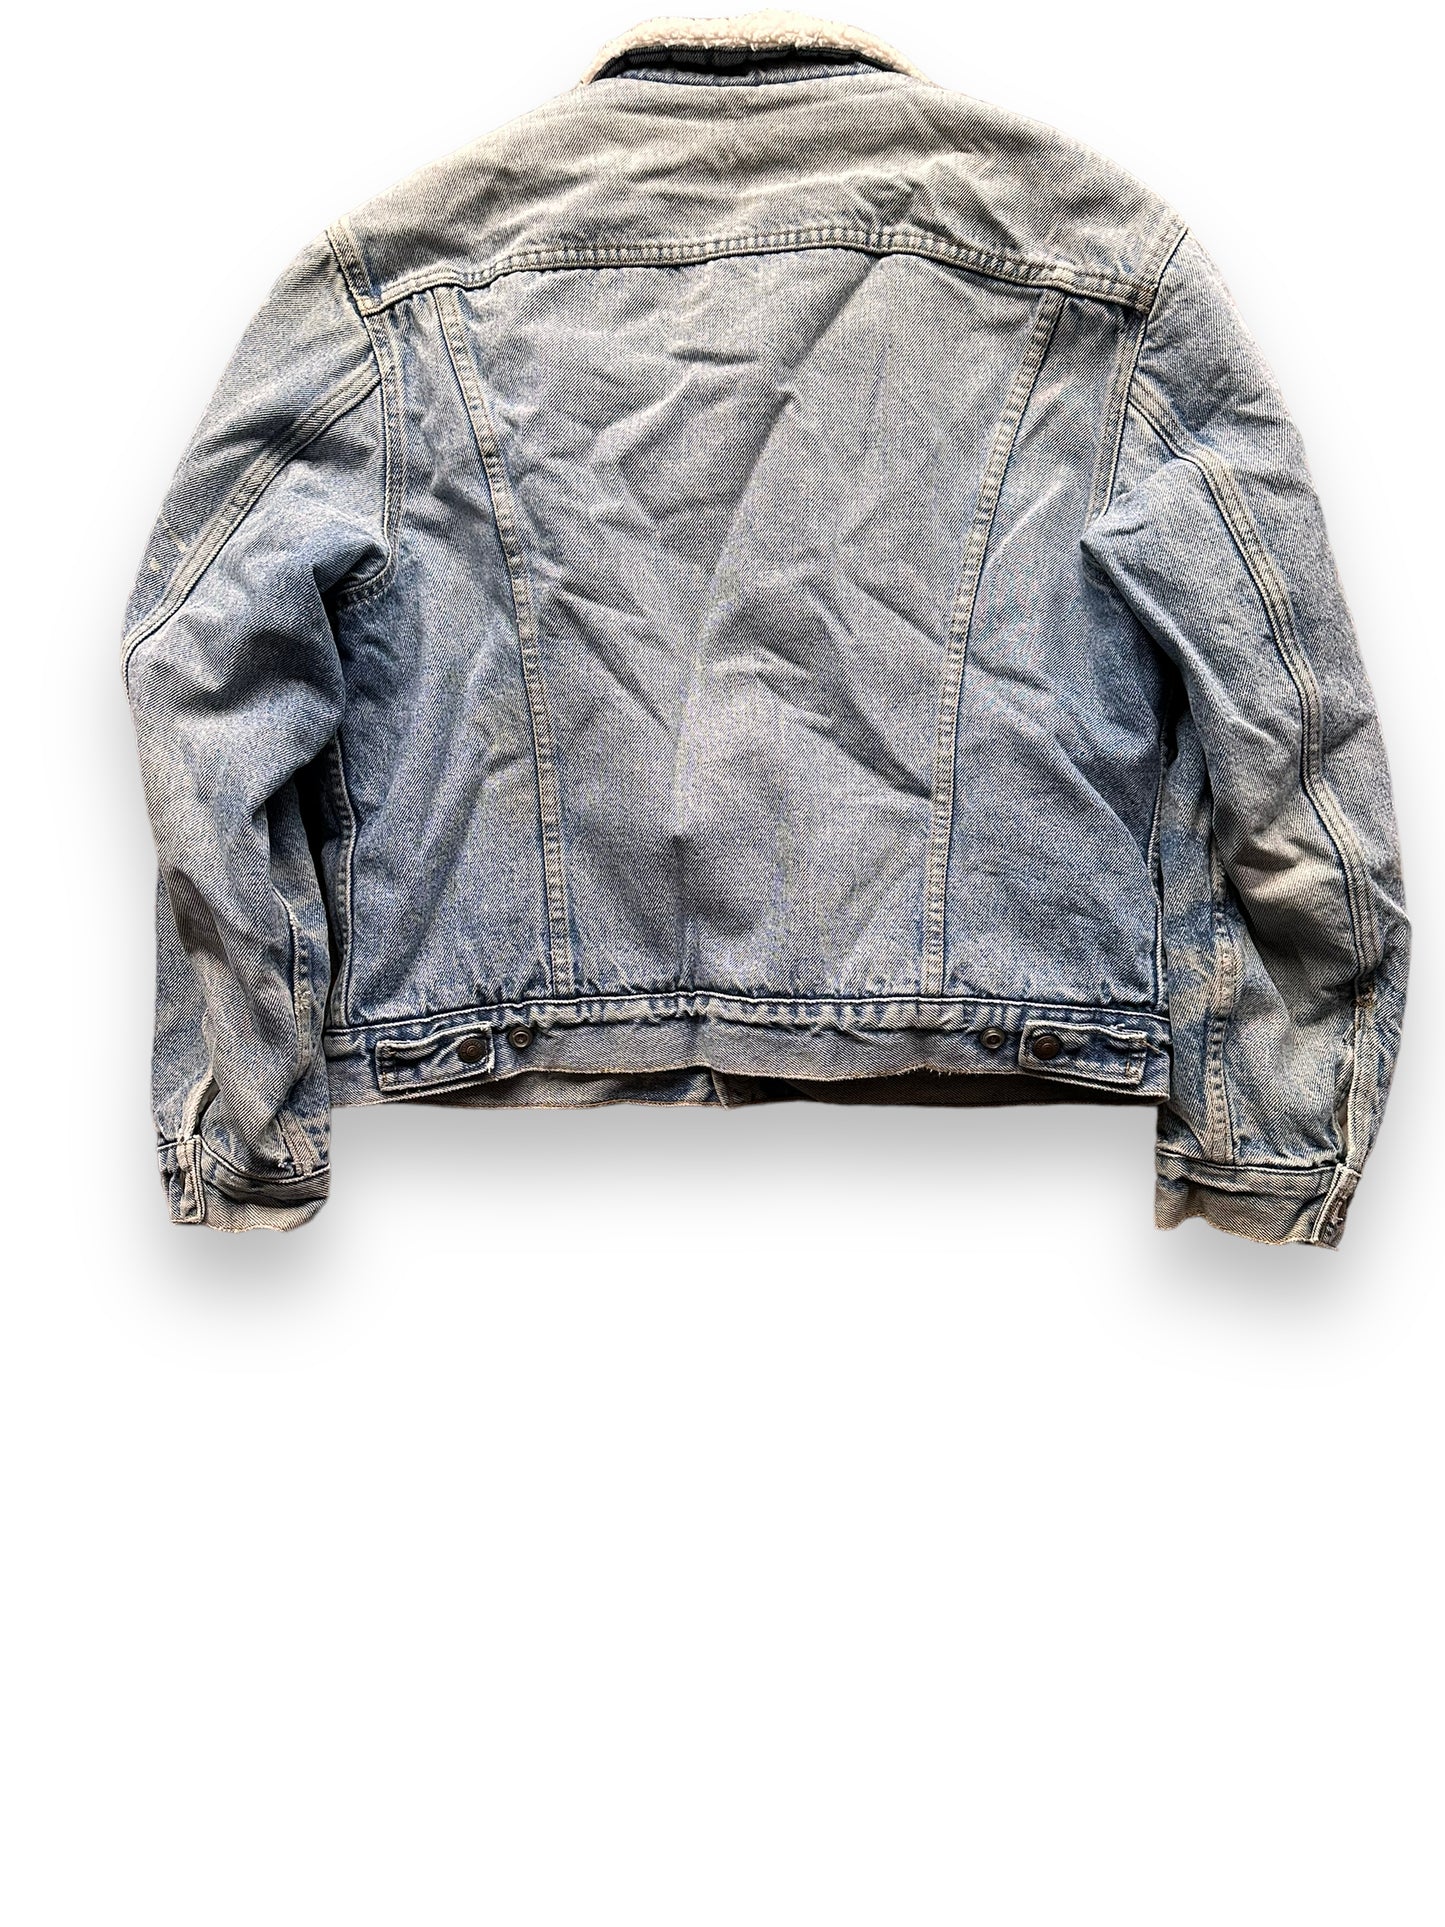 Rear View of Vintage Light Wash Levis Sherpa Type III Denim Jacket SZ 44 | Vintage Denim Workwear Seattle | Barn Owl Seattle